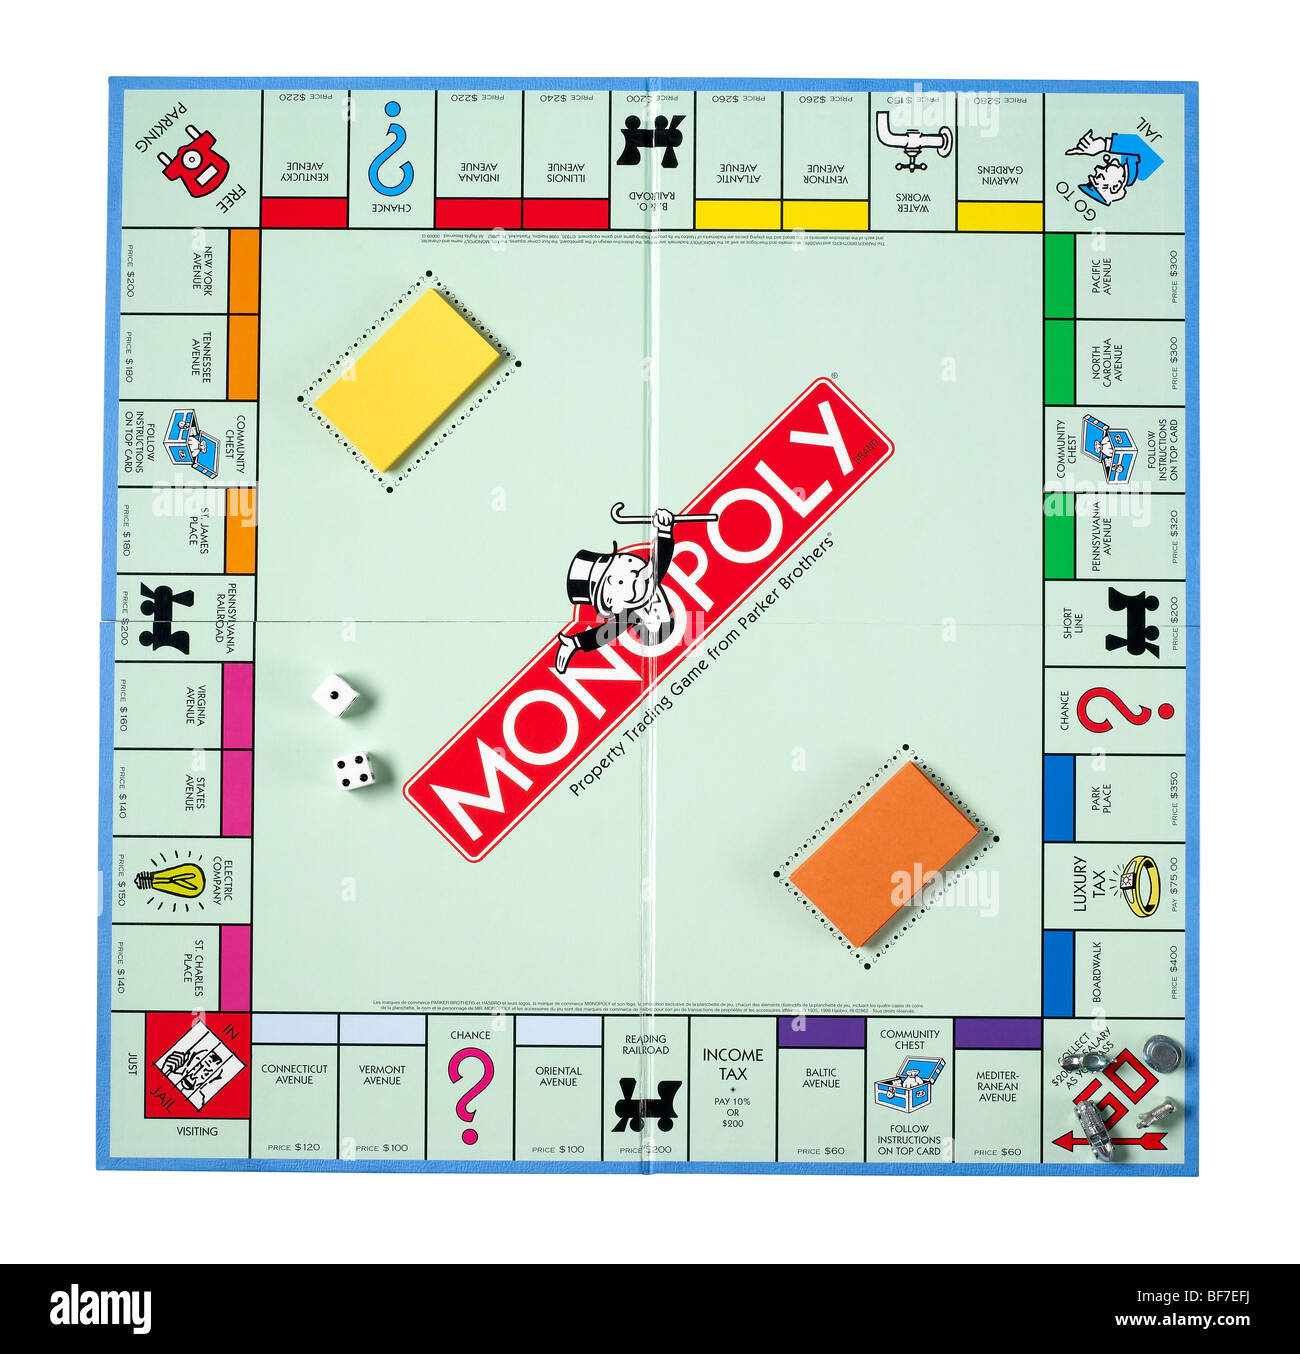 Monopoly Stock Photo